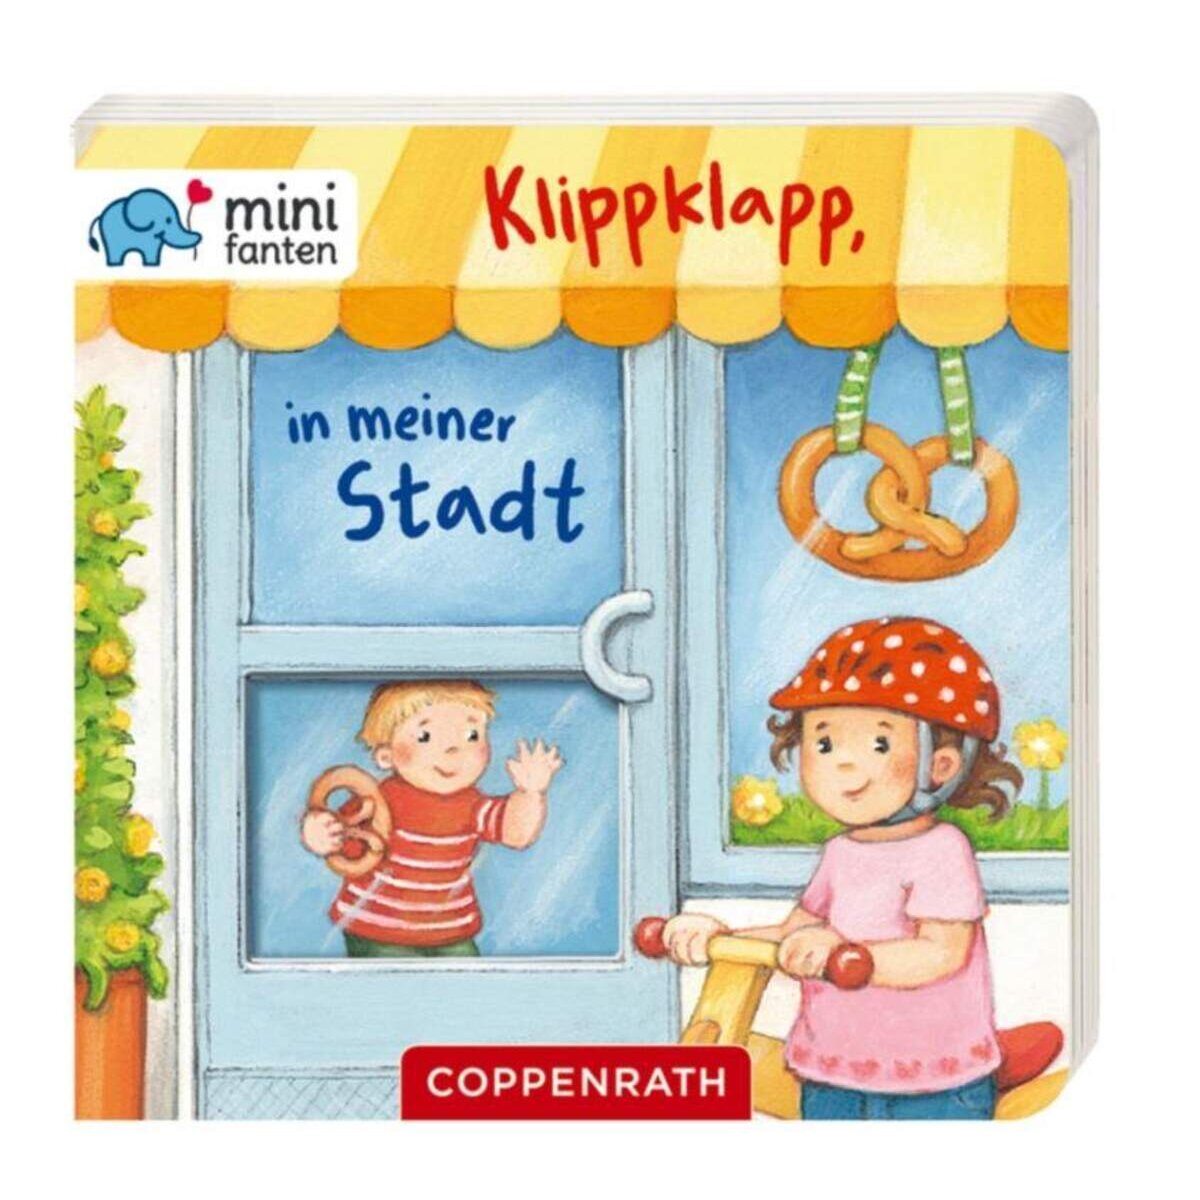 Coppenrath Verlag minifanten 12: Klippklapp, in meiner Stadt